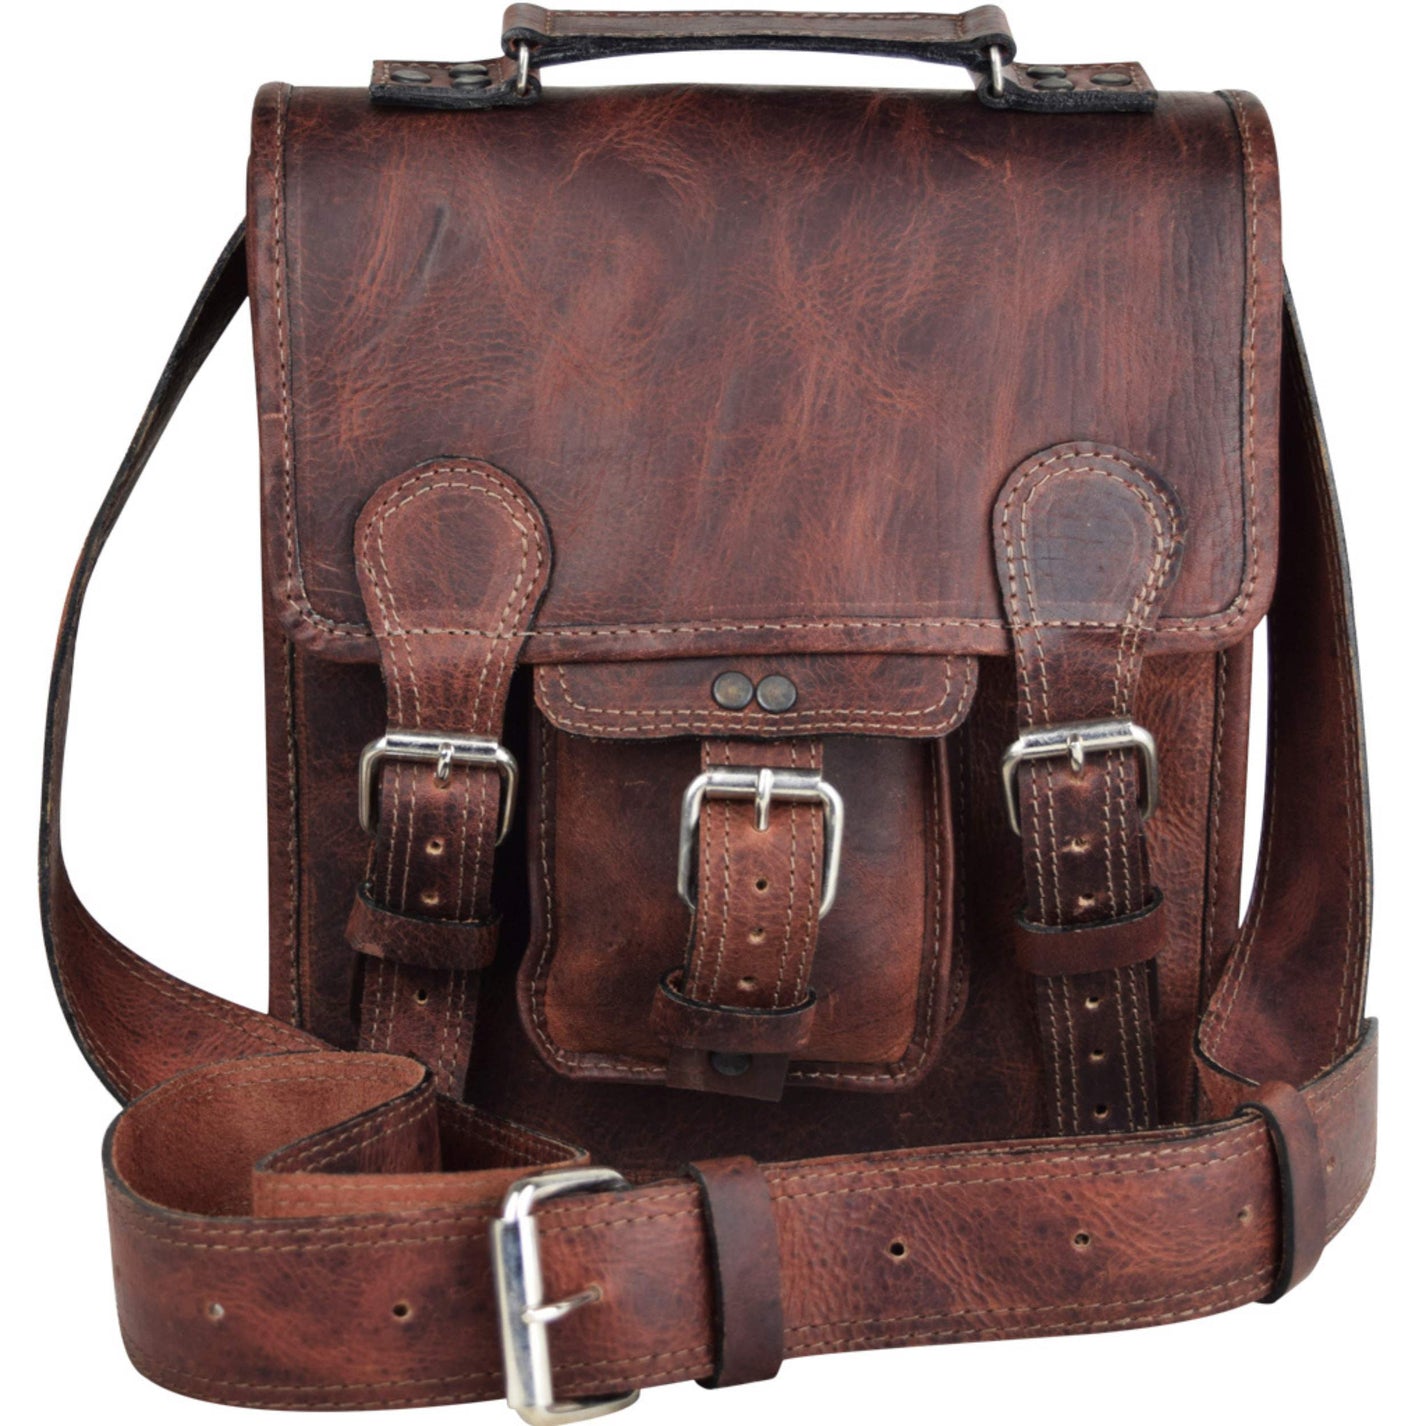 Small Messenger Bag | Leather Travel Bag